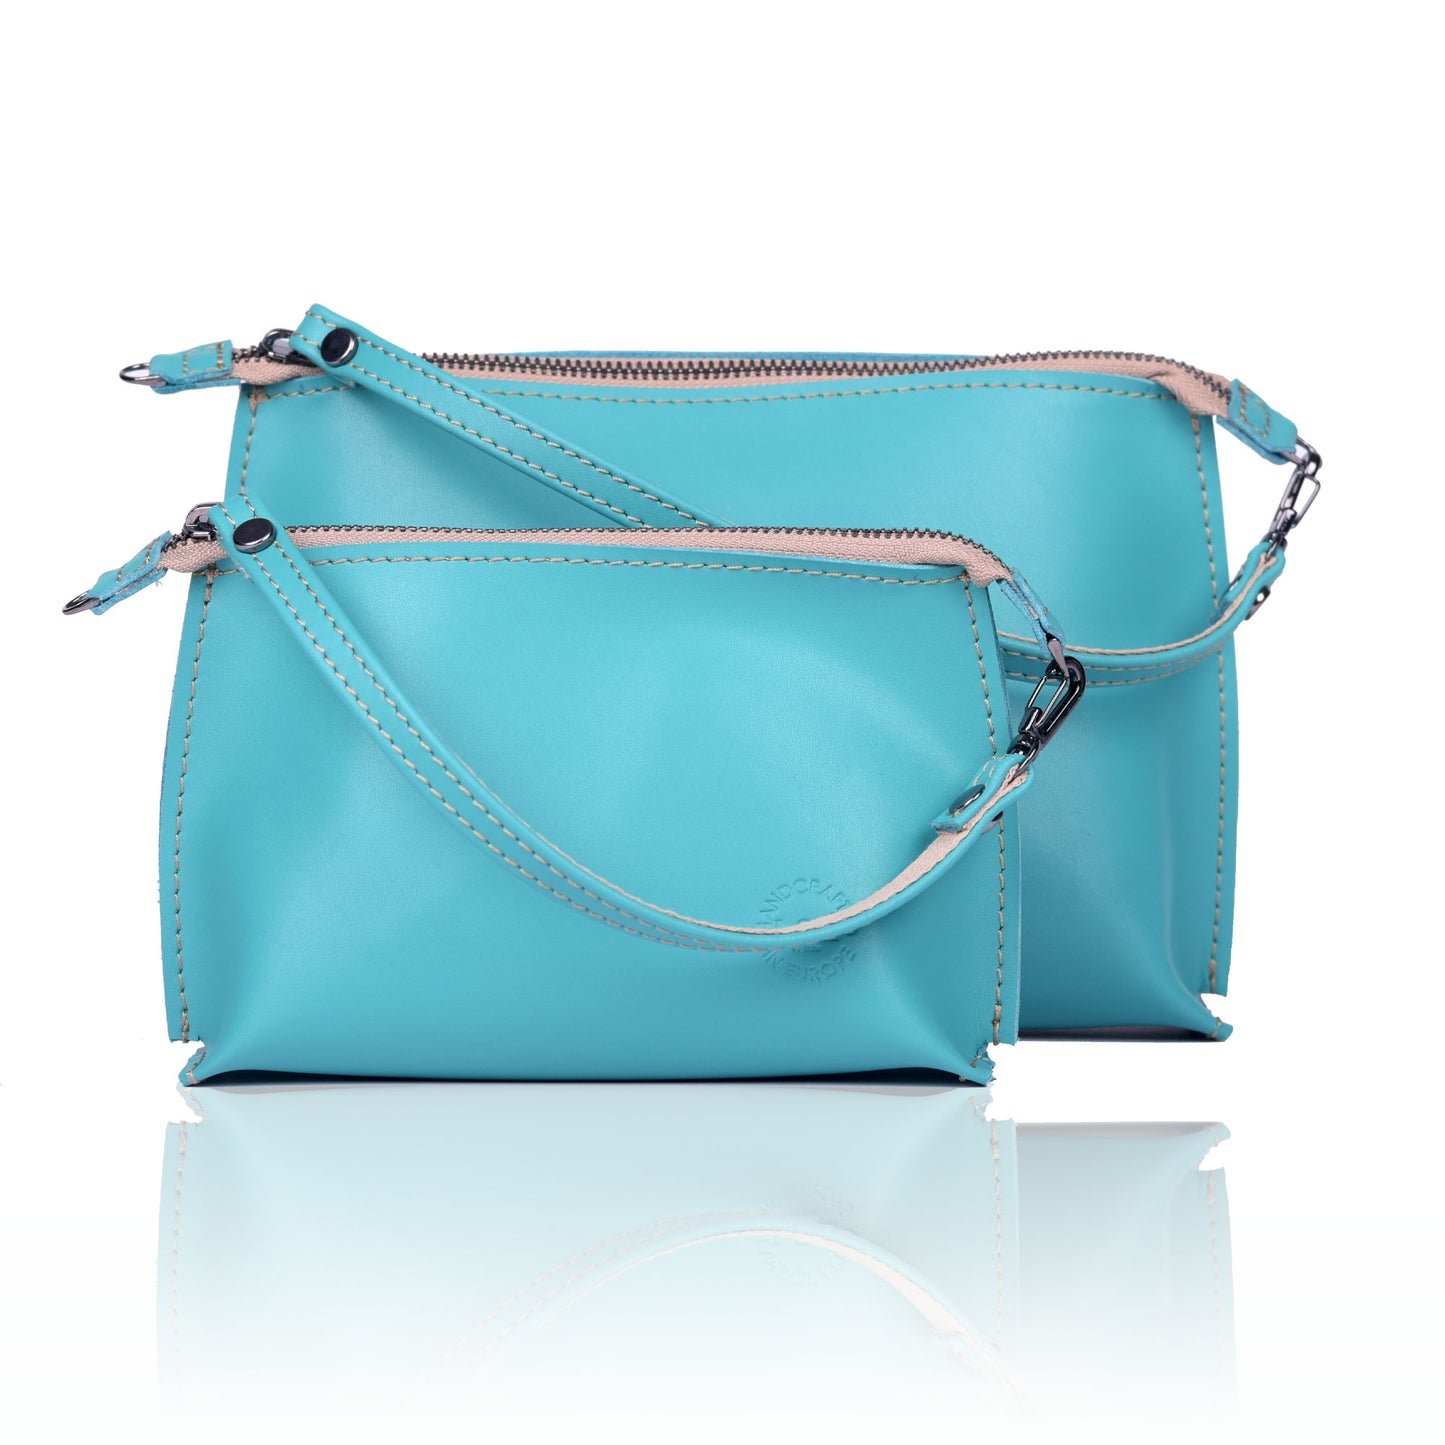 Poppy - Premium Bags & accessories from L&E Studio